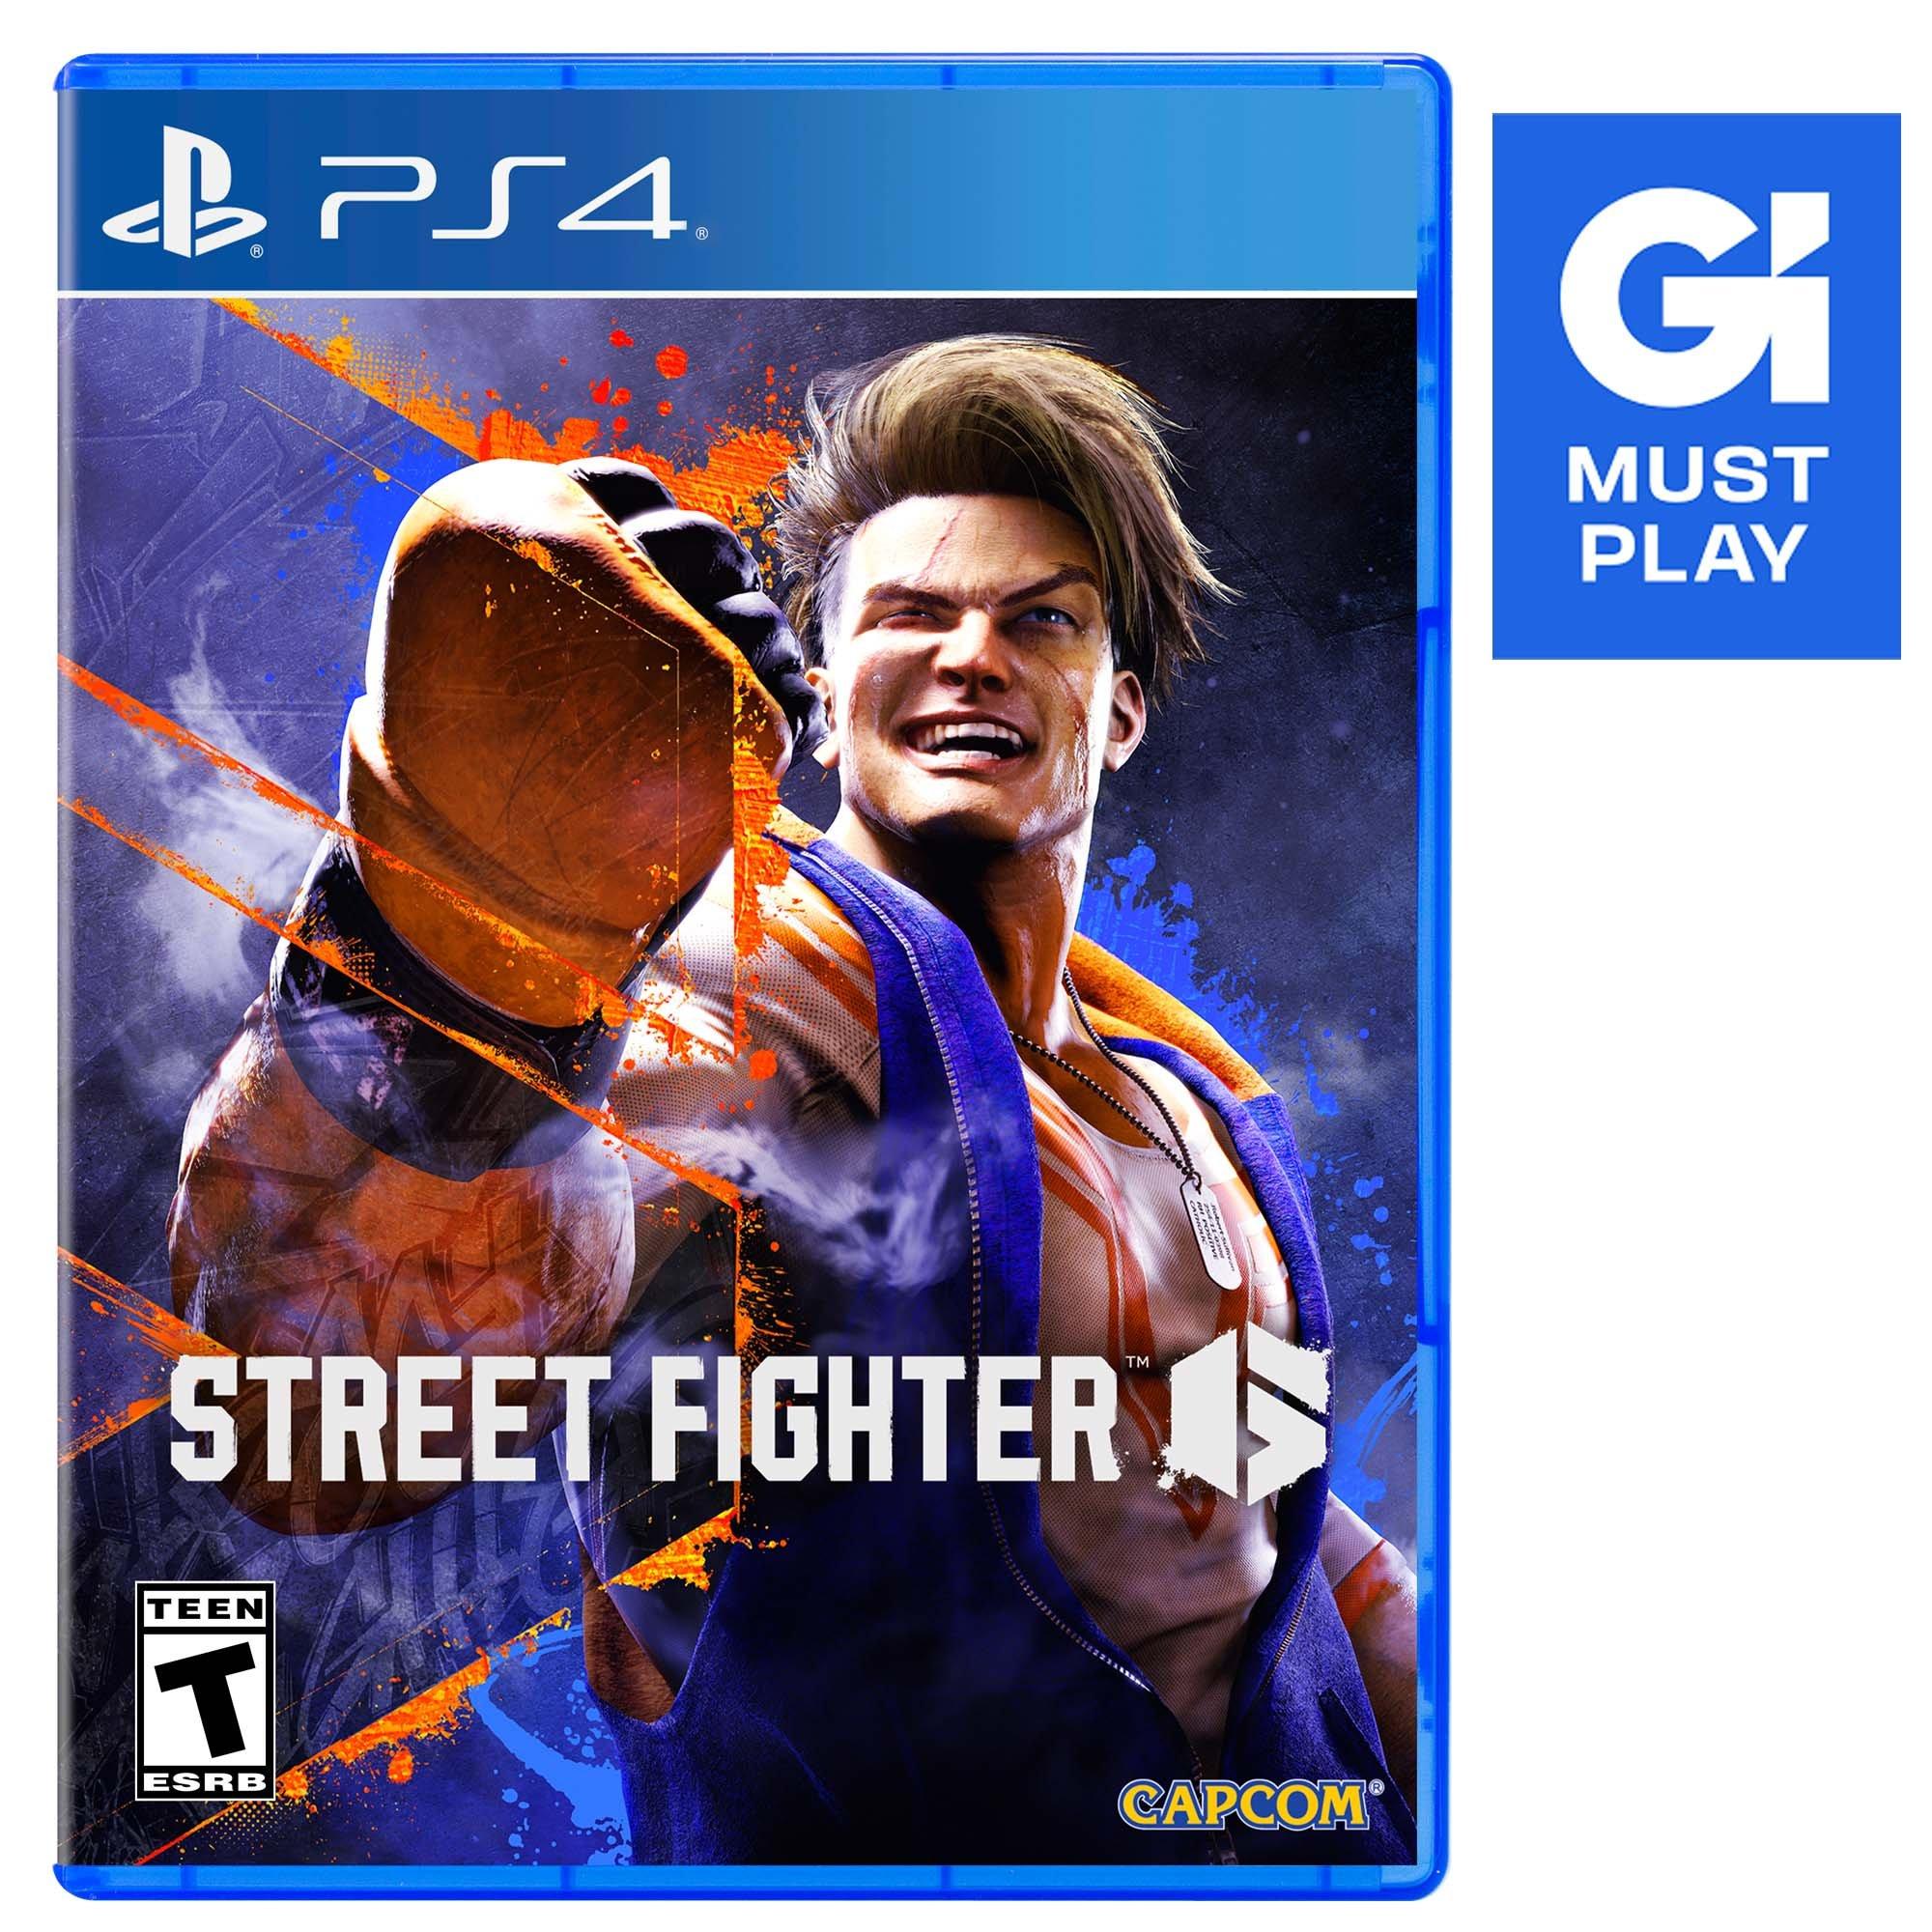 Street Fighter 6 - PlayStation 4 | Capcom | GameStop